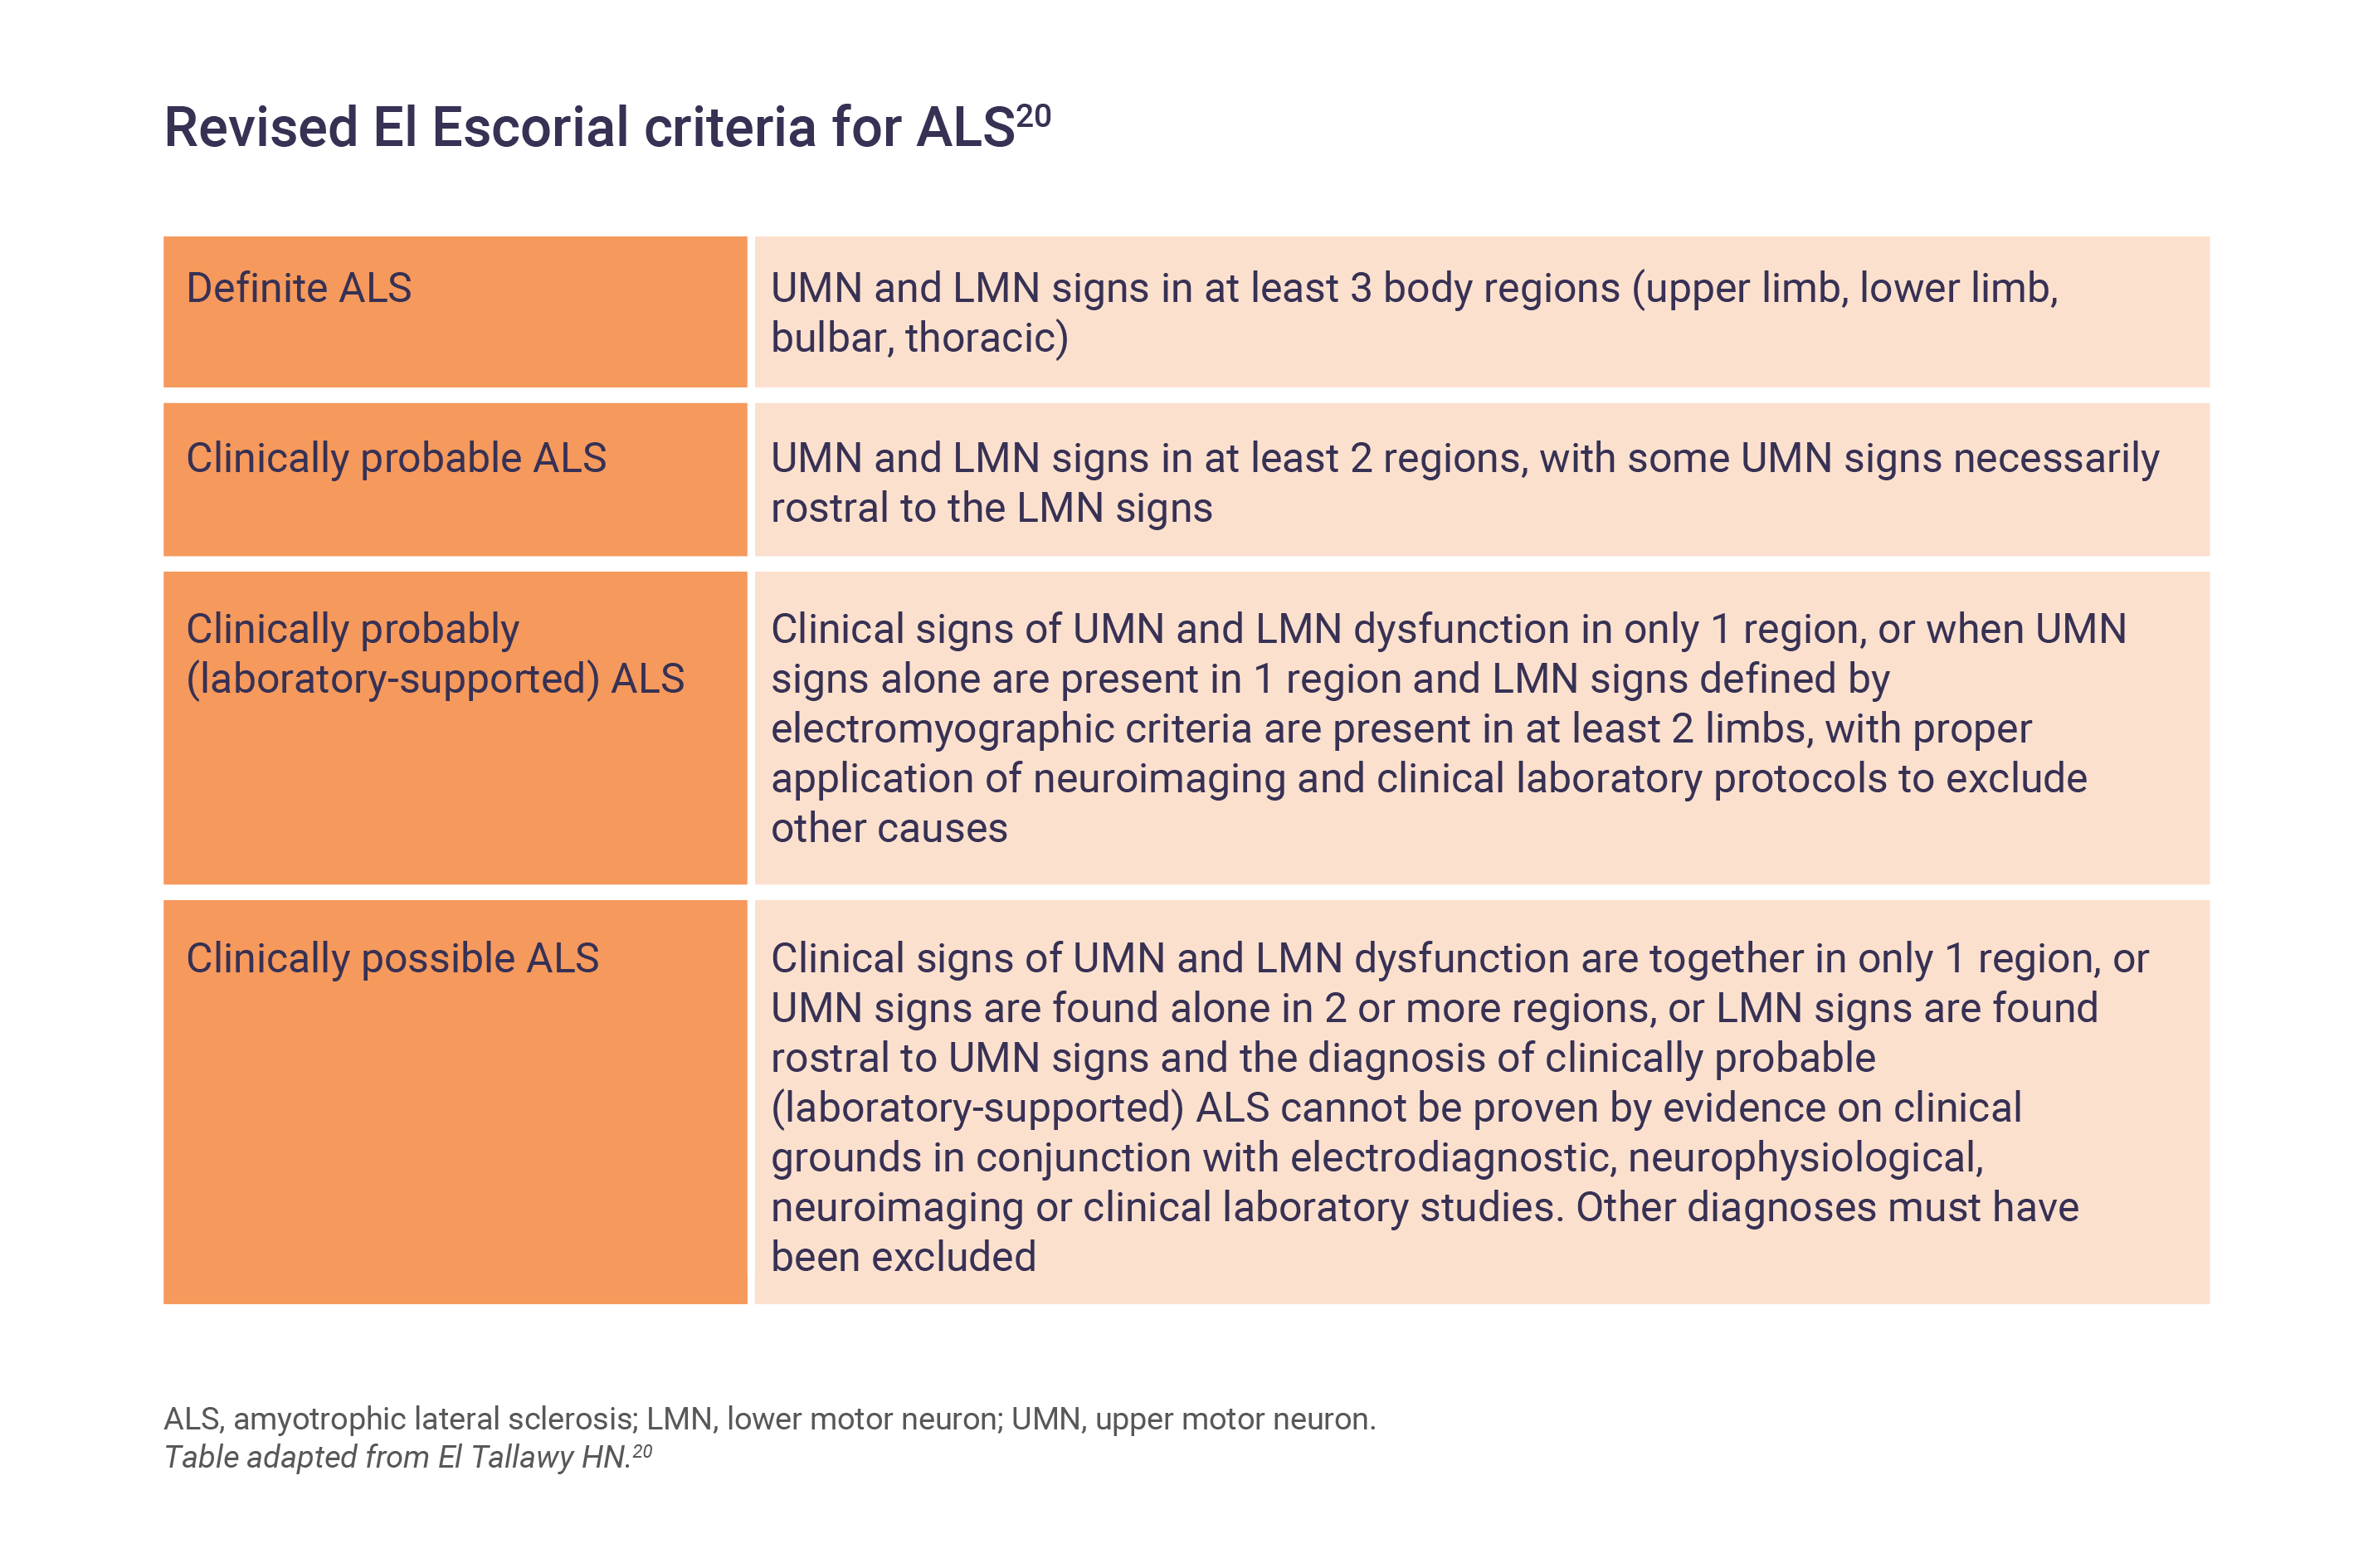 Revised El Escorial criteria for ALS